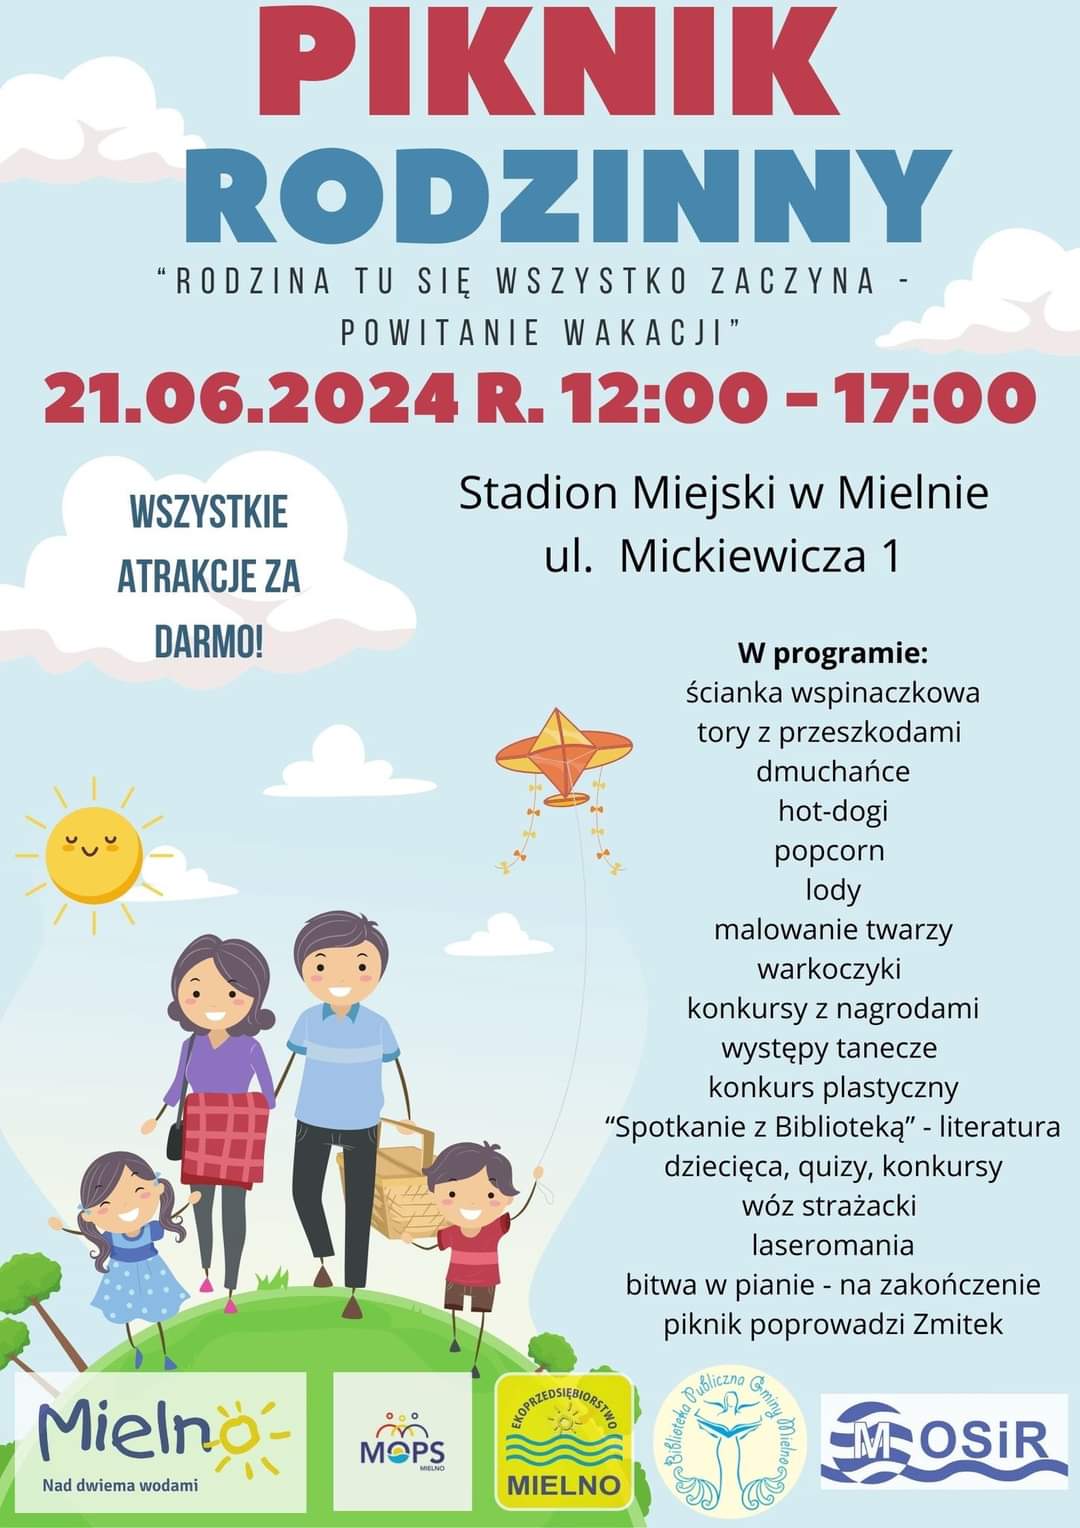 Plakat z zaproszeniem na piknik rodzinny w Mielnie 21 czerwca 2024